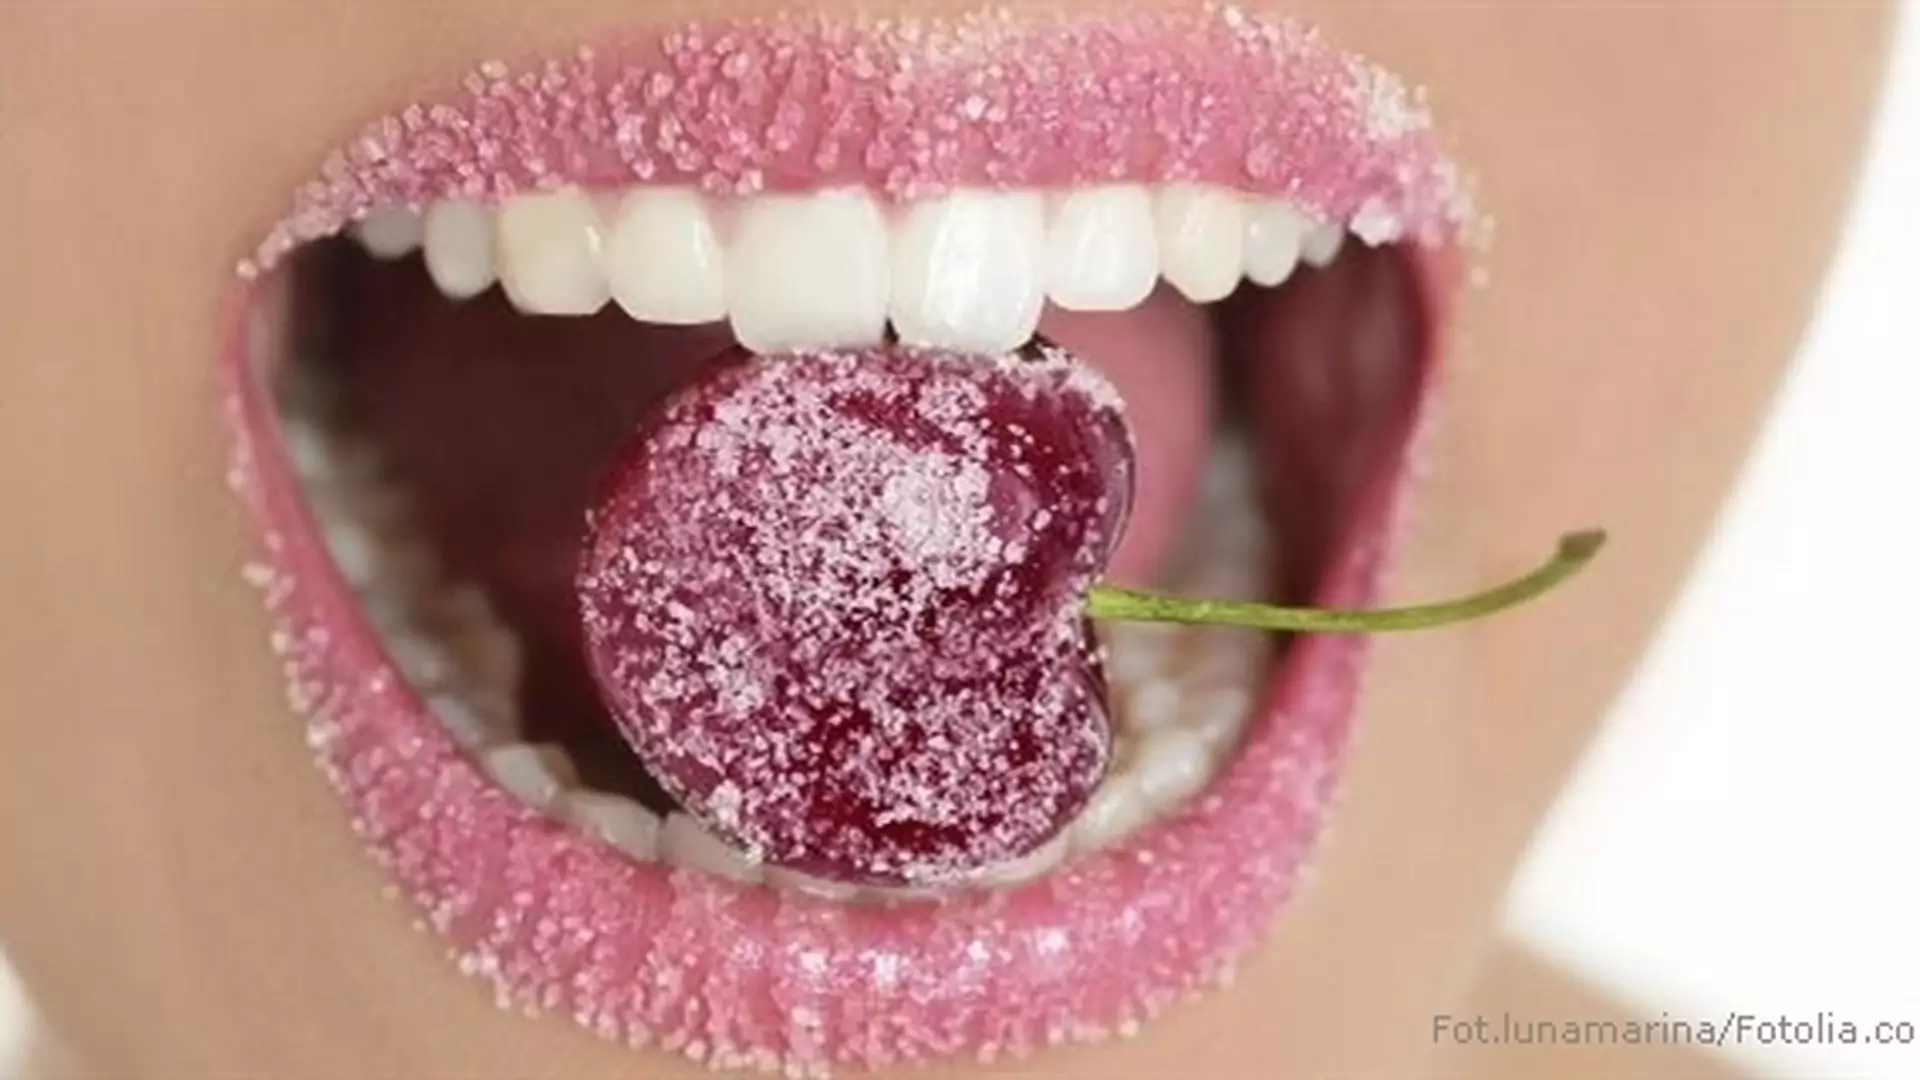 Słodka pułapka: dlaczego lepiej ograniczyć cukier?